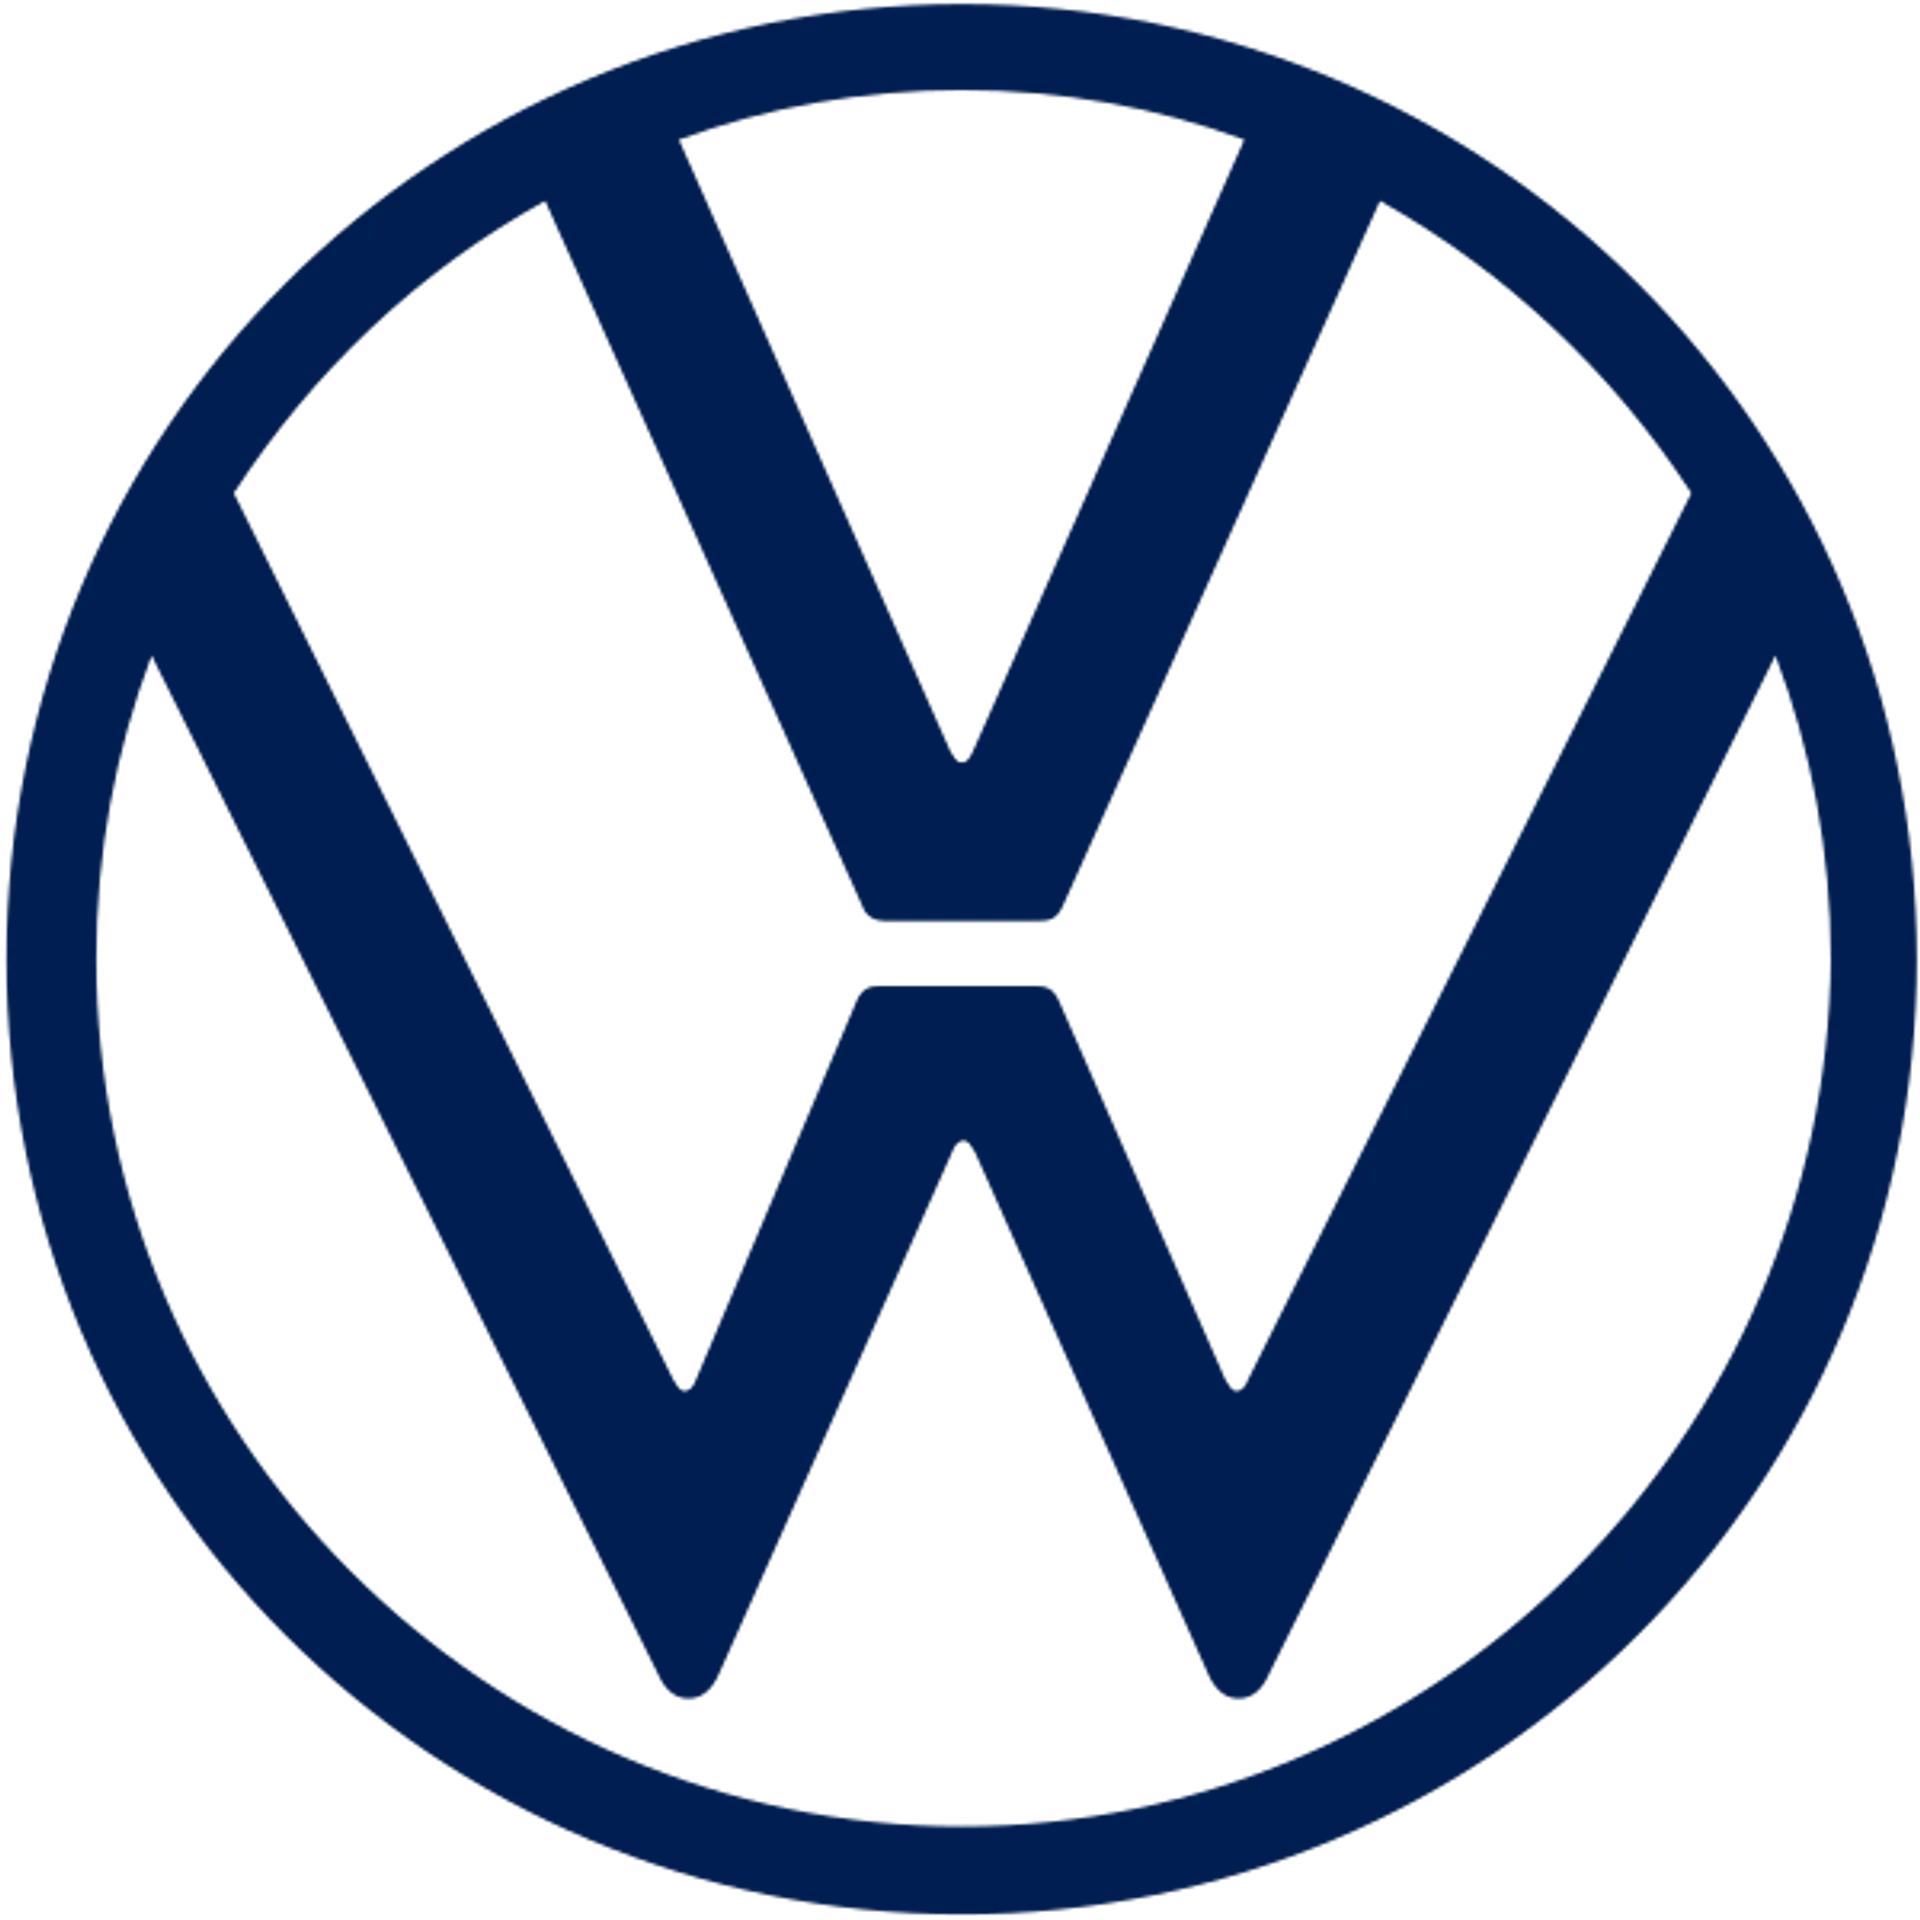 VOLKSWAGEN logo